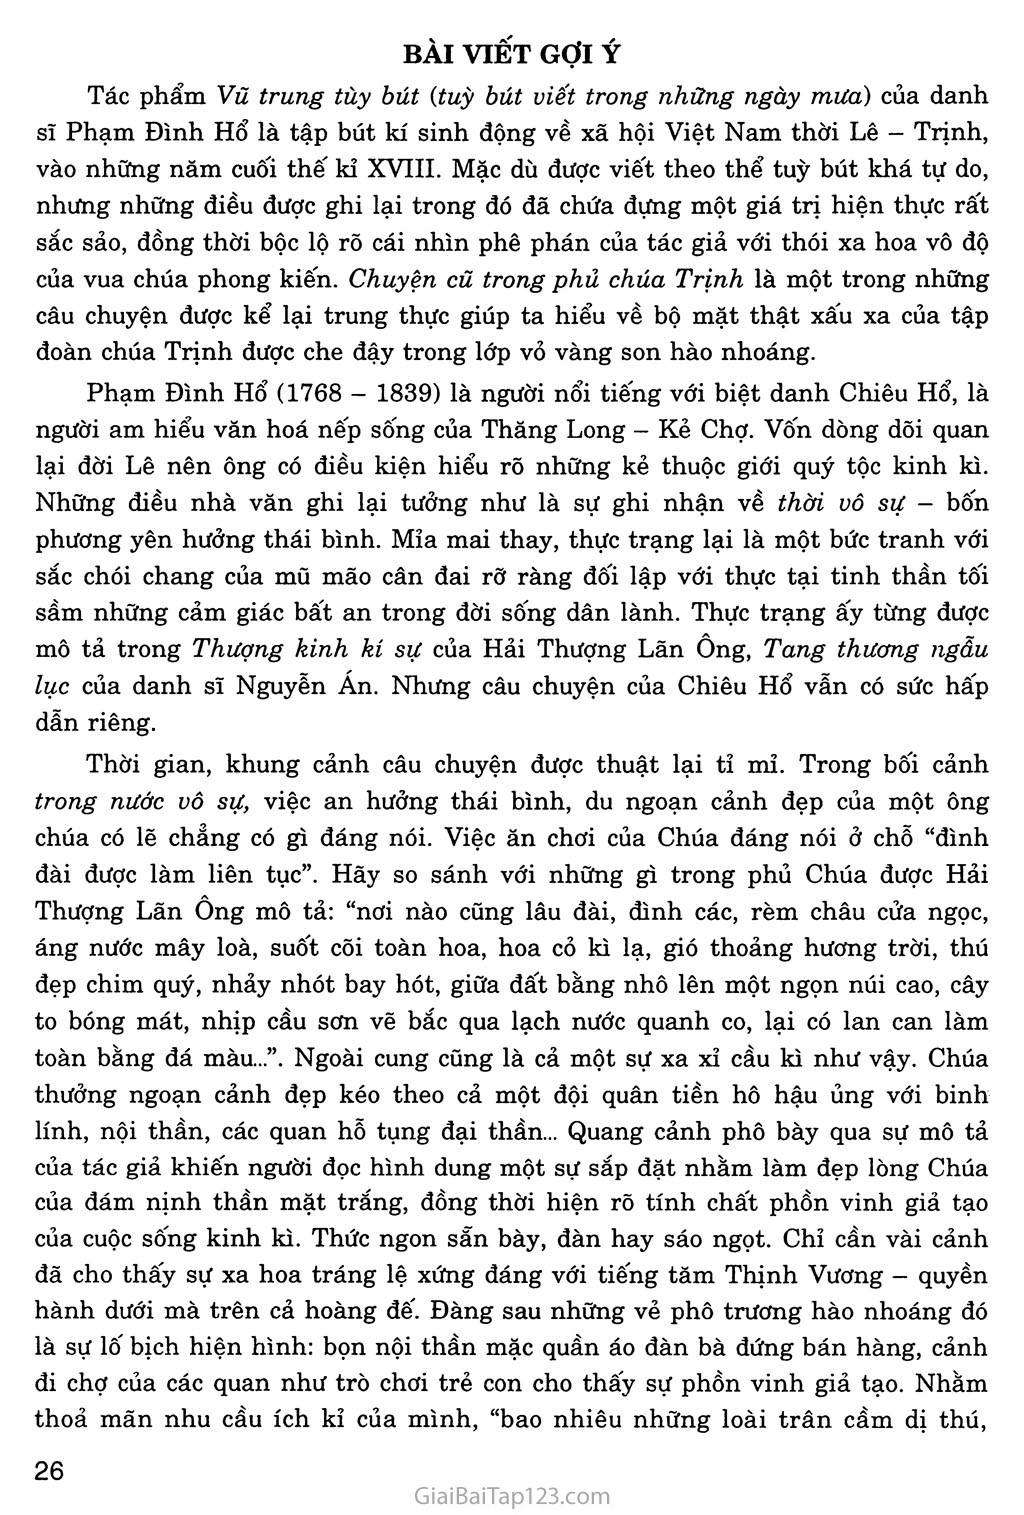 Chuyện cũ trong phủ chúa Trịnh (trích Vũ trung tùy bút) trang 5